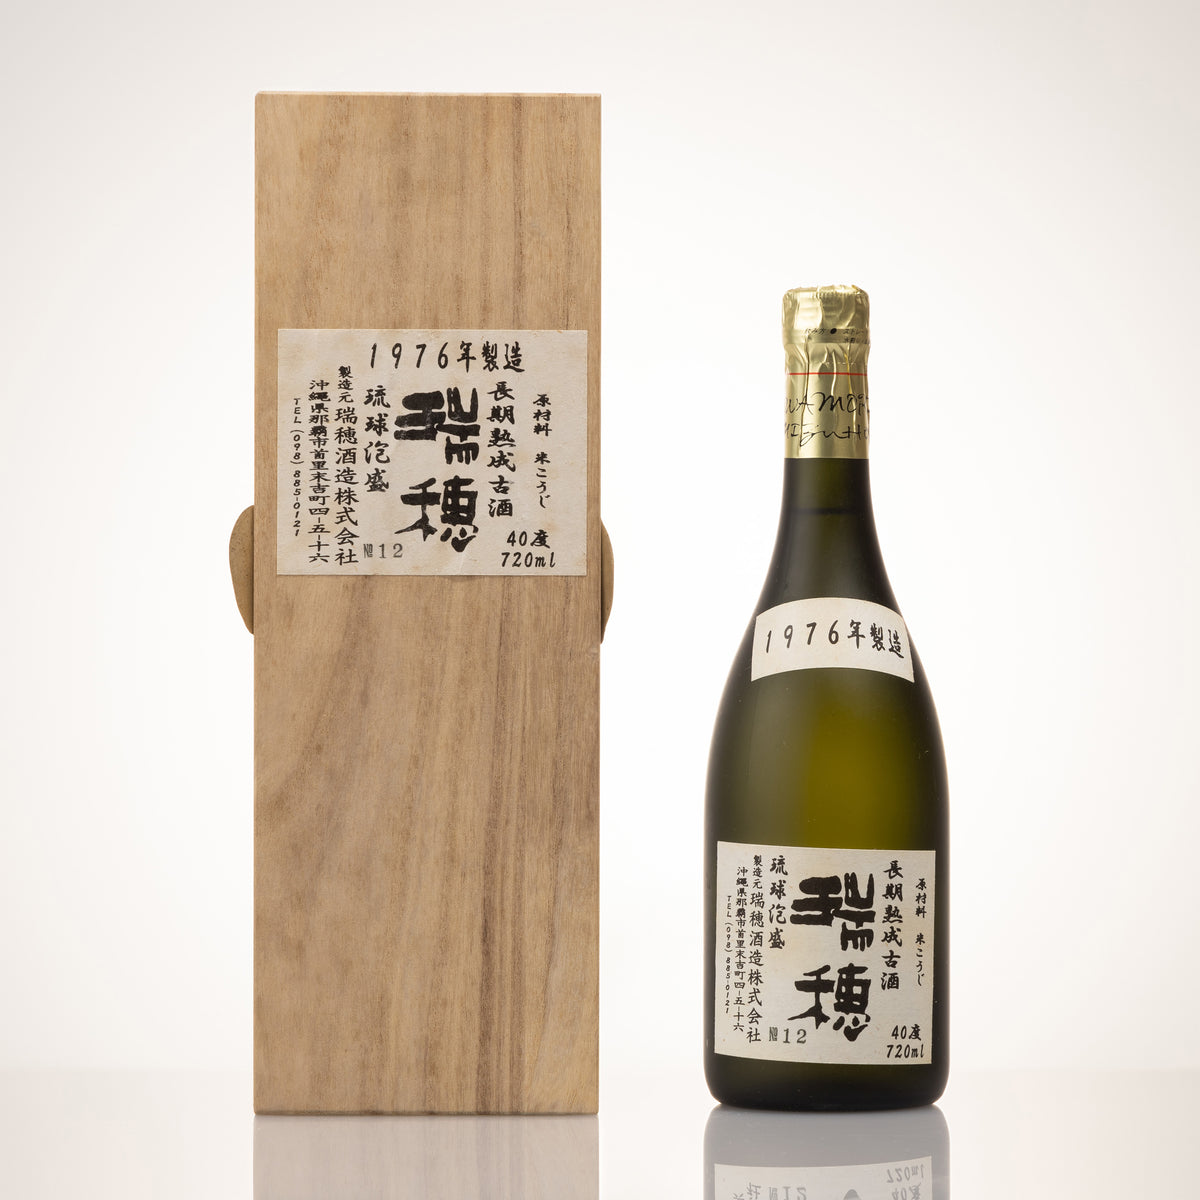 【オールドボトル】1976年製造瑞穂 40度日本酒